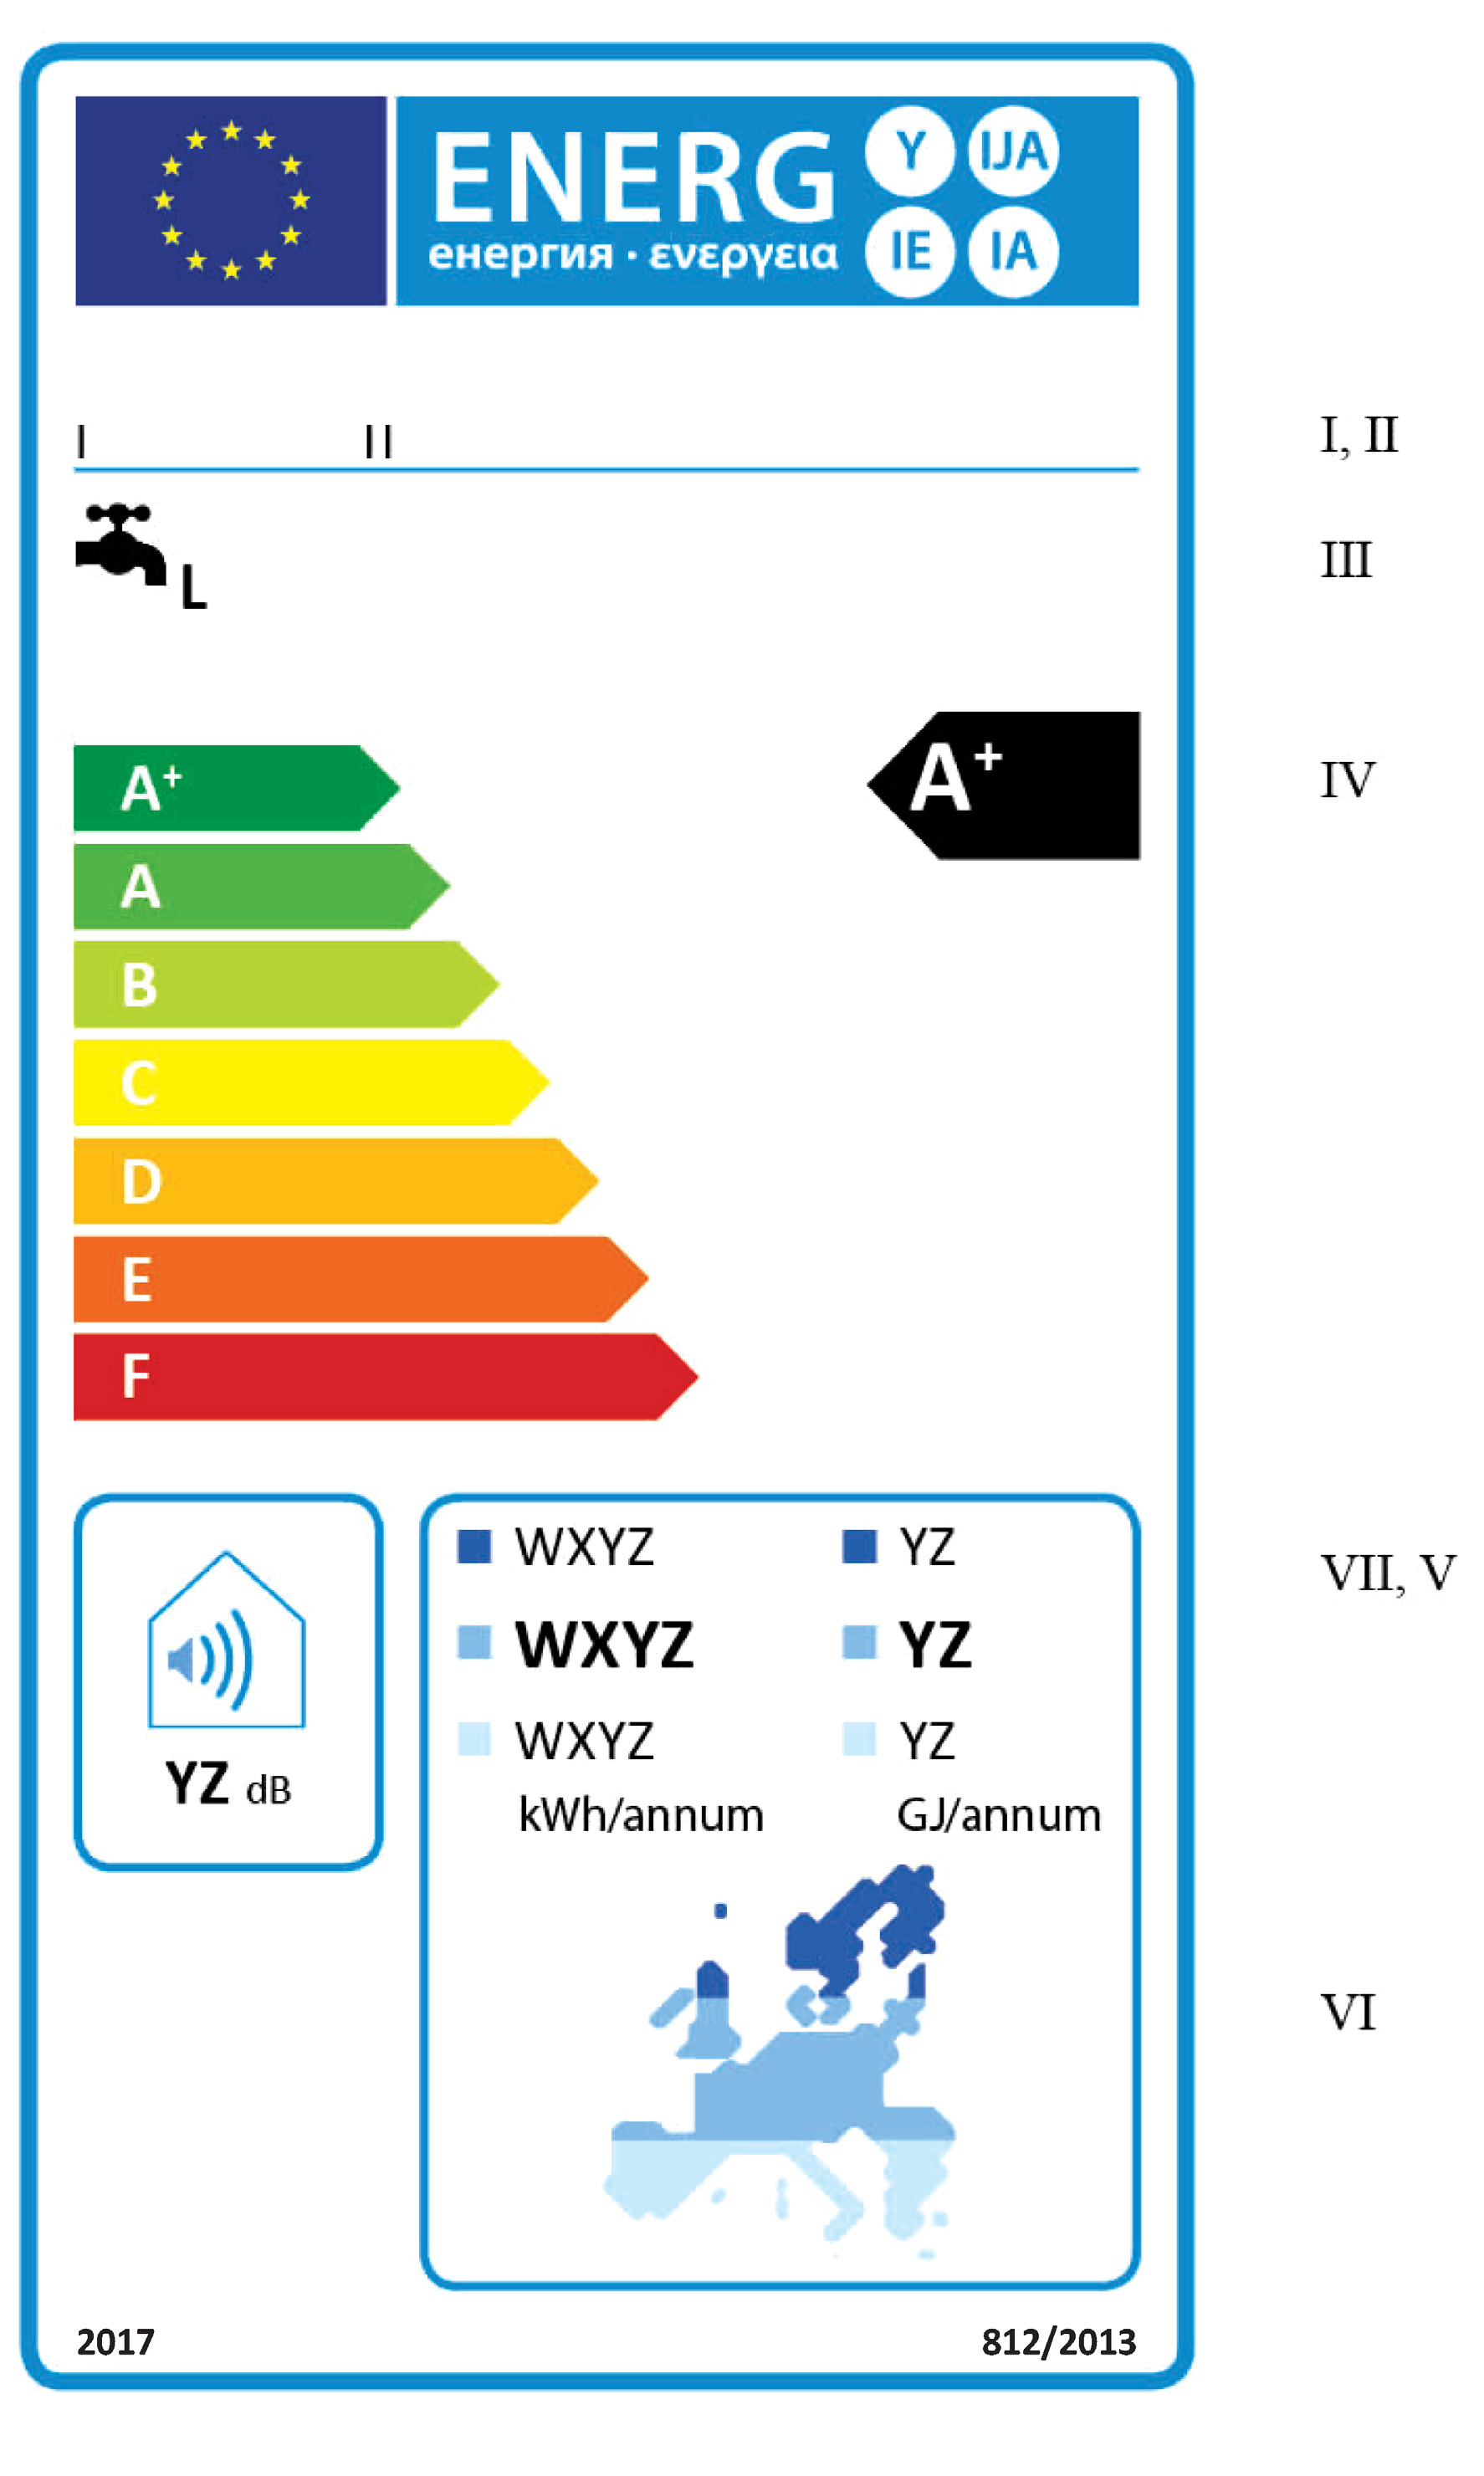 2013R0812 ES 06.06.2014 001.001 26 1.2.2. Calentadores de agua solares de las clases de eficiencia energética de caldeo de agua de A + a F (a) En la etiqueta figurará la información enumerada en el punto 1.